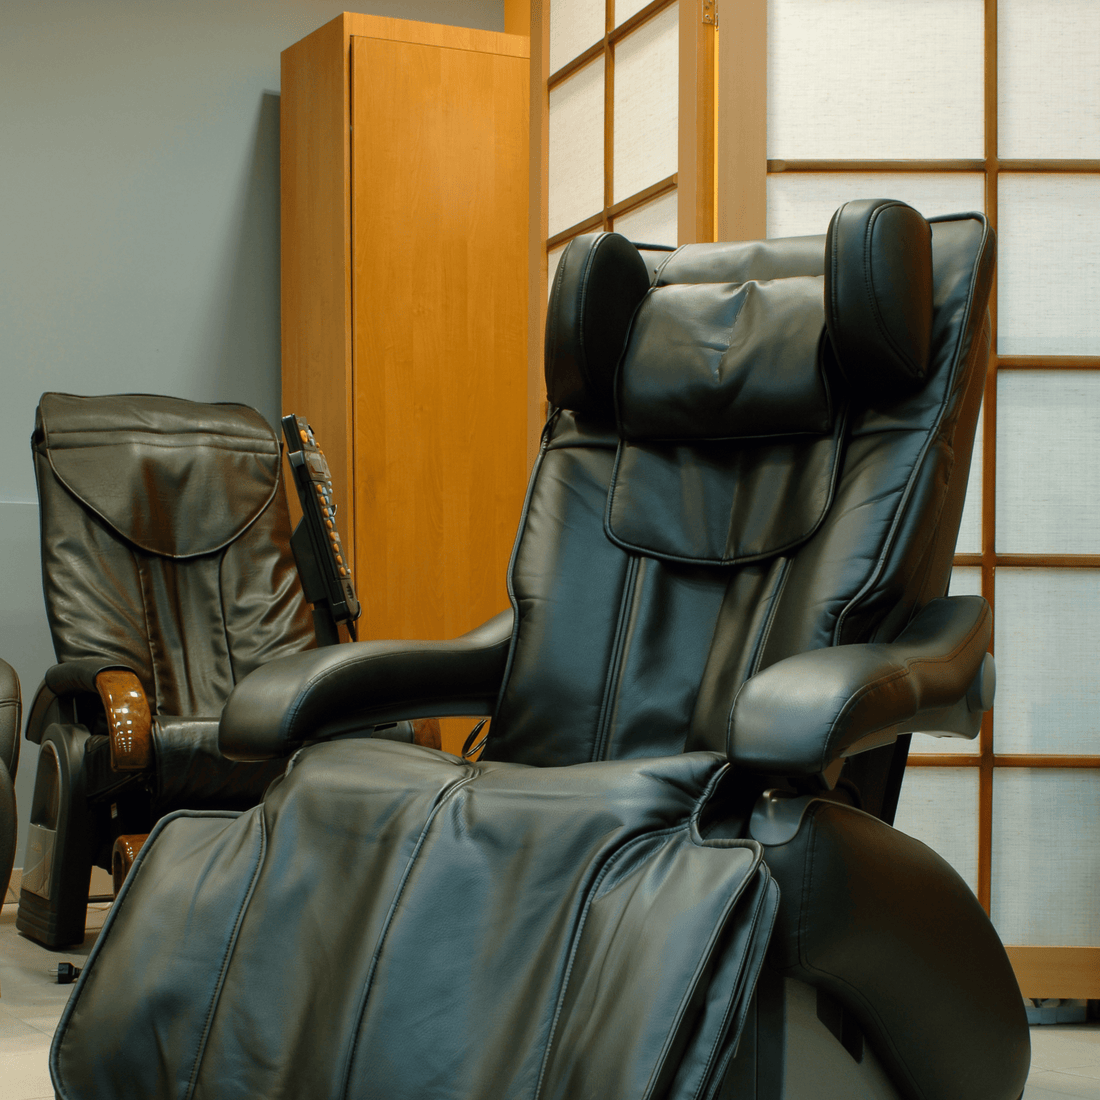 Massage Chairs Warehouse